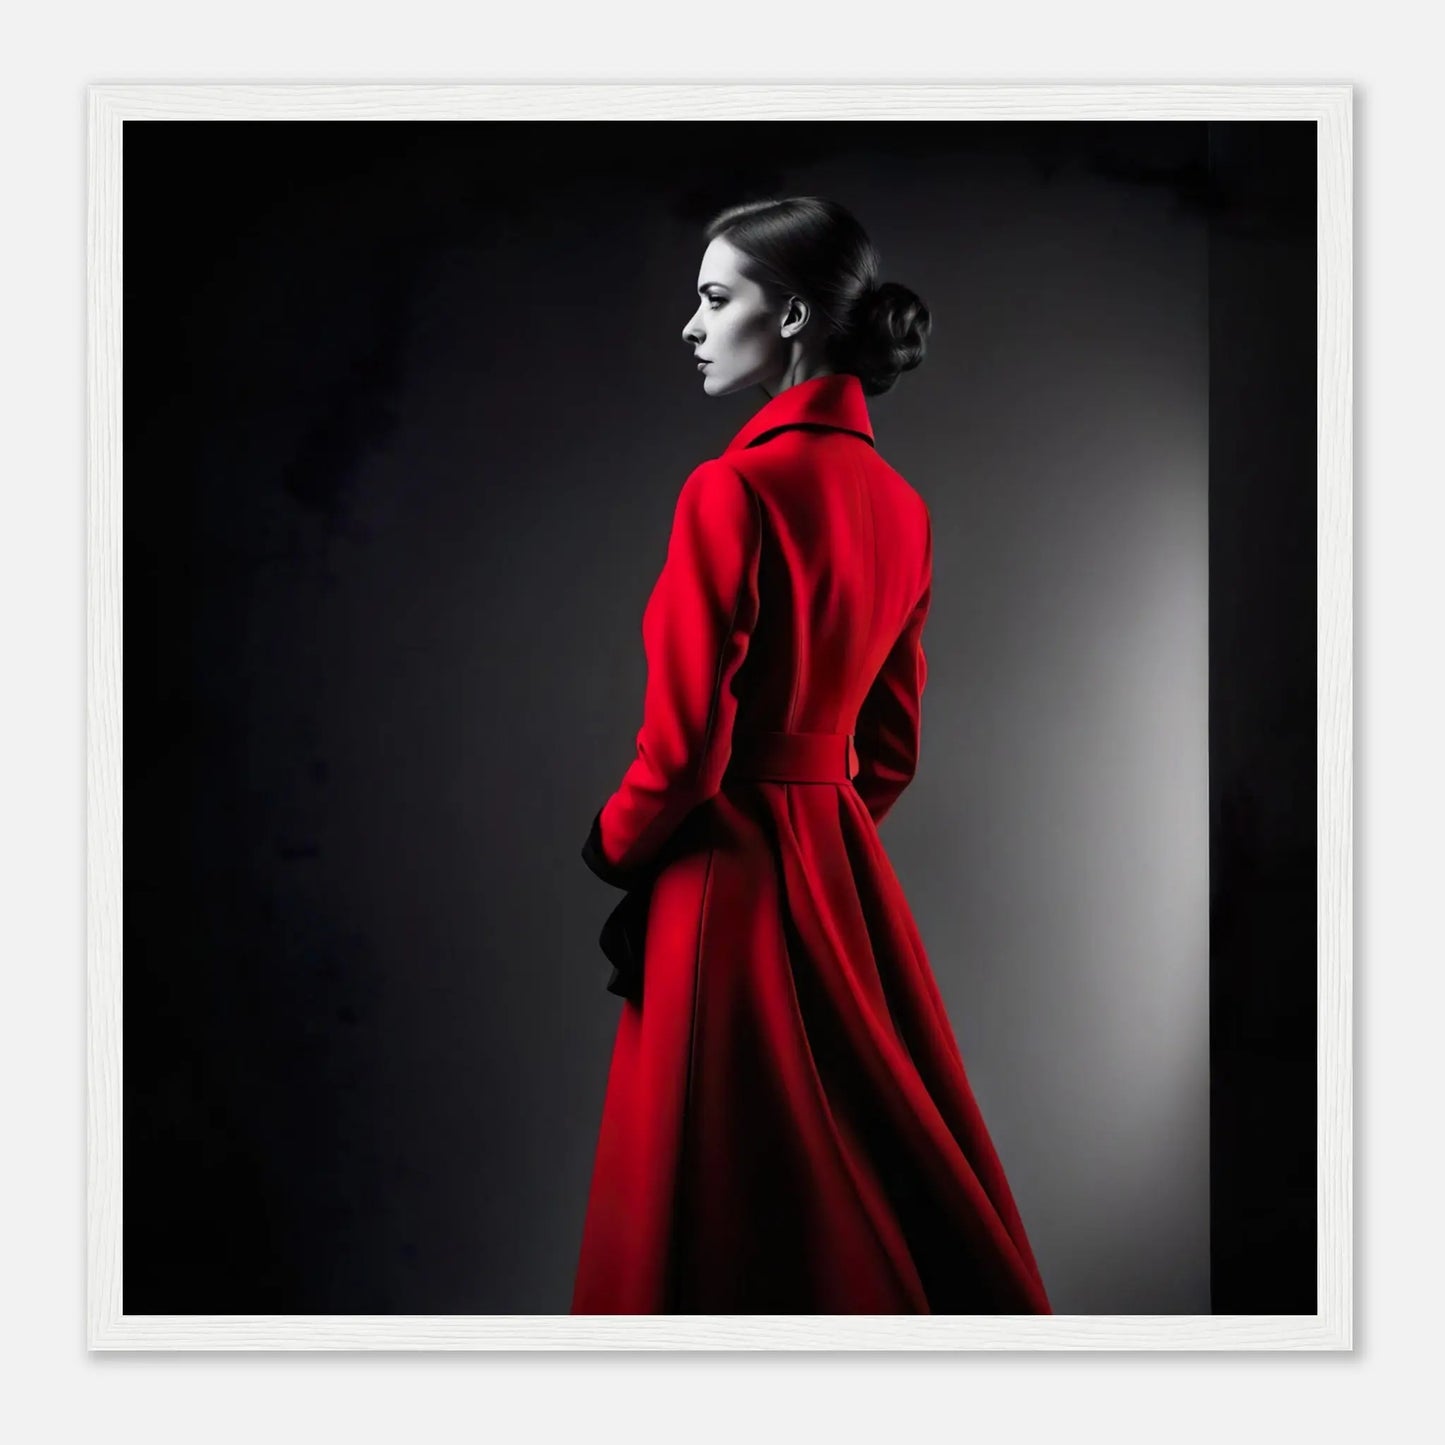 Gerahmtes Premium-Poster - Frau im roten Mantel - Schwarz-Weiß, KI-Kunst - RolConArt, Schwarz-Weiß mit Akzentfarben, 50x50-cm-20x20-Weißer-Rahmen